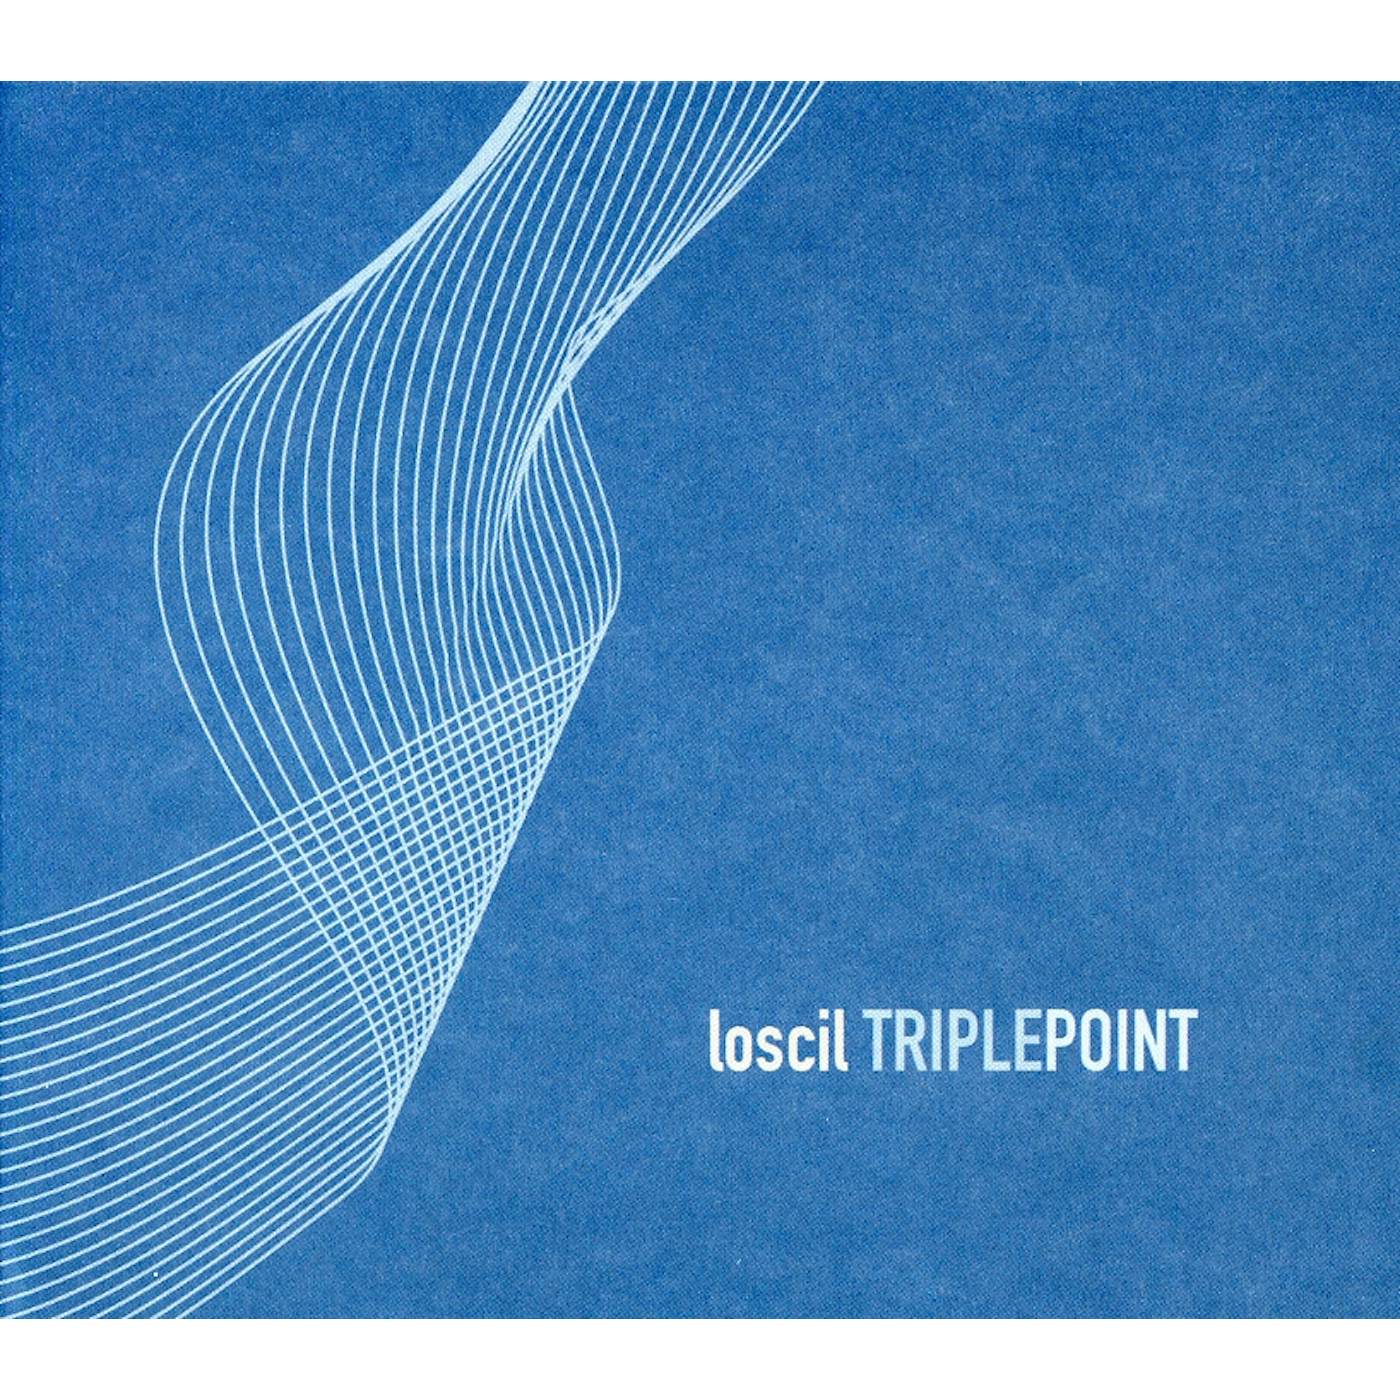 Loscil TRIPLE POINT CD